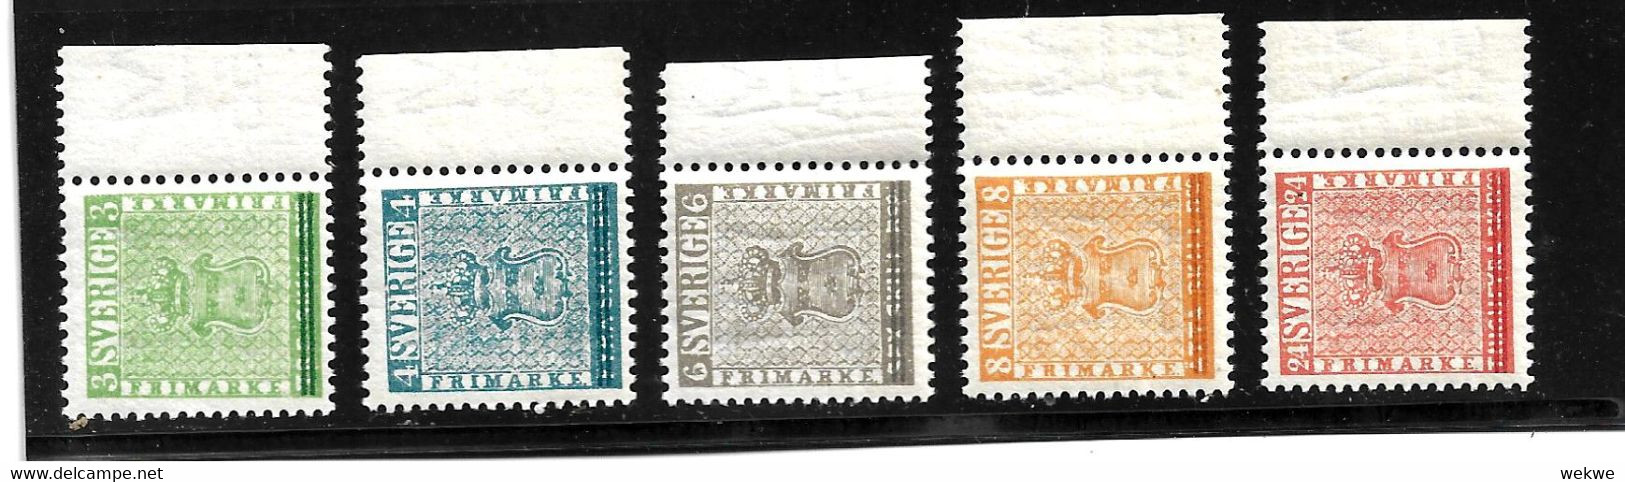 Sch Mi.Nr. 406-10,  - SCHWEDEN -/ STOCKHOLMIA 1955 ** - Unused Stamps